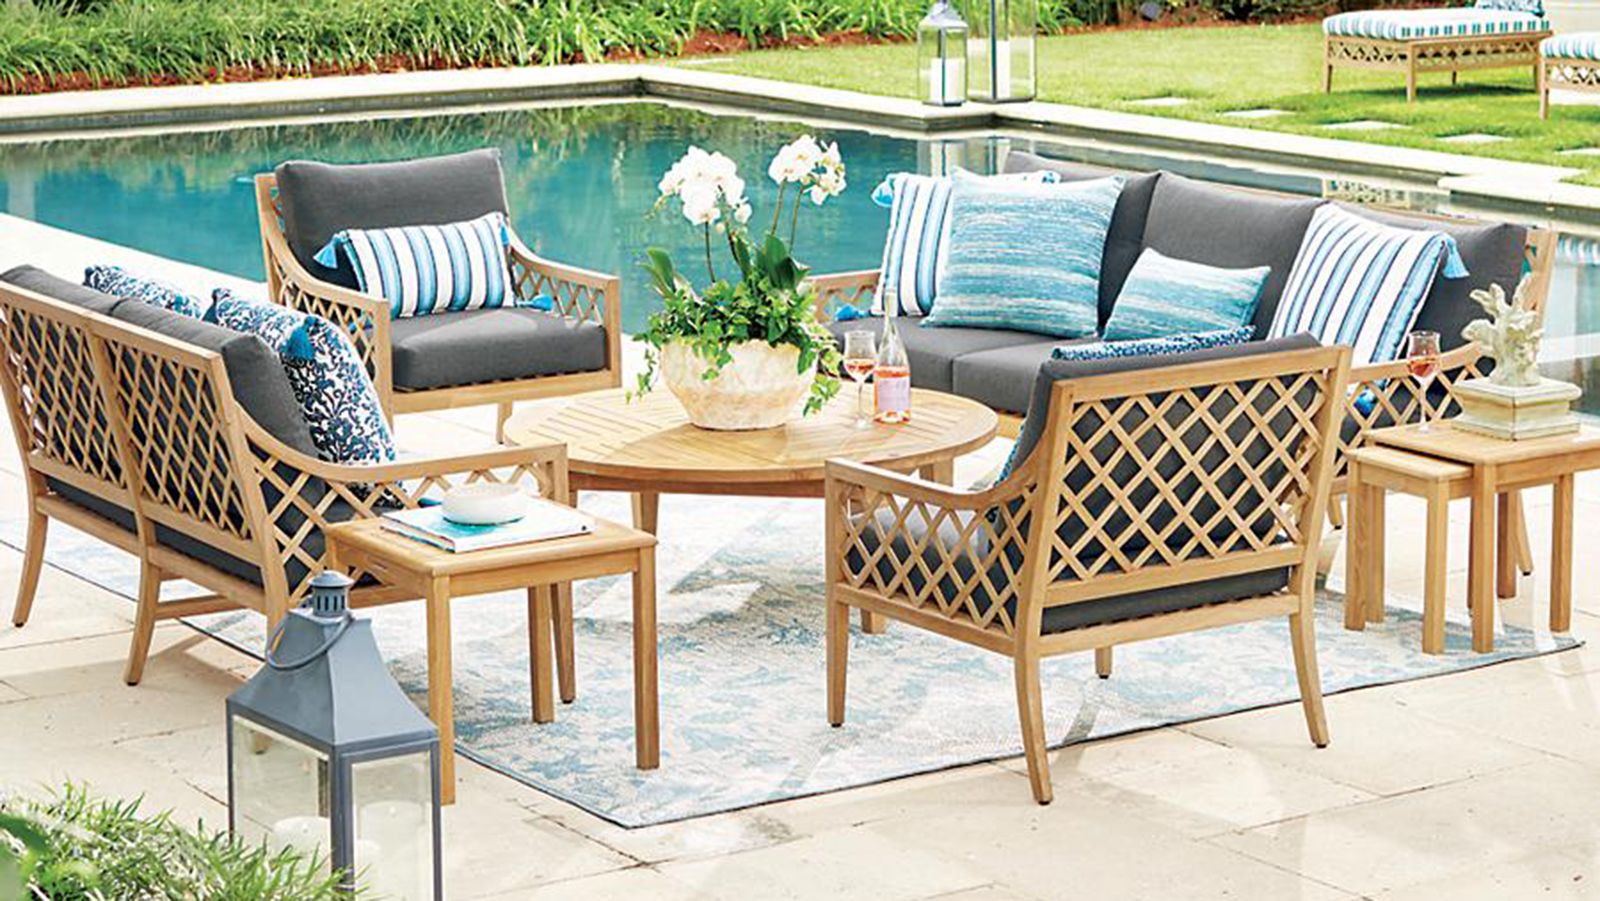 Garden Desk Recliner Cushion(No Chair) Outdoor Veranda Deck